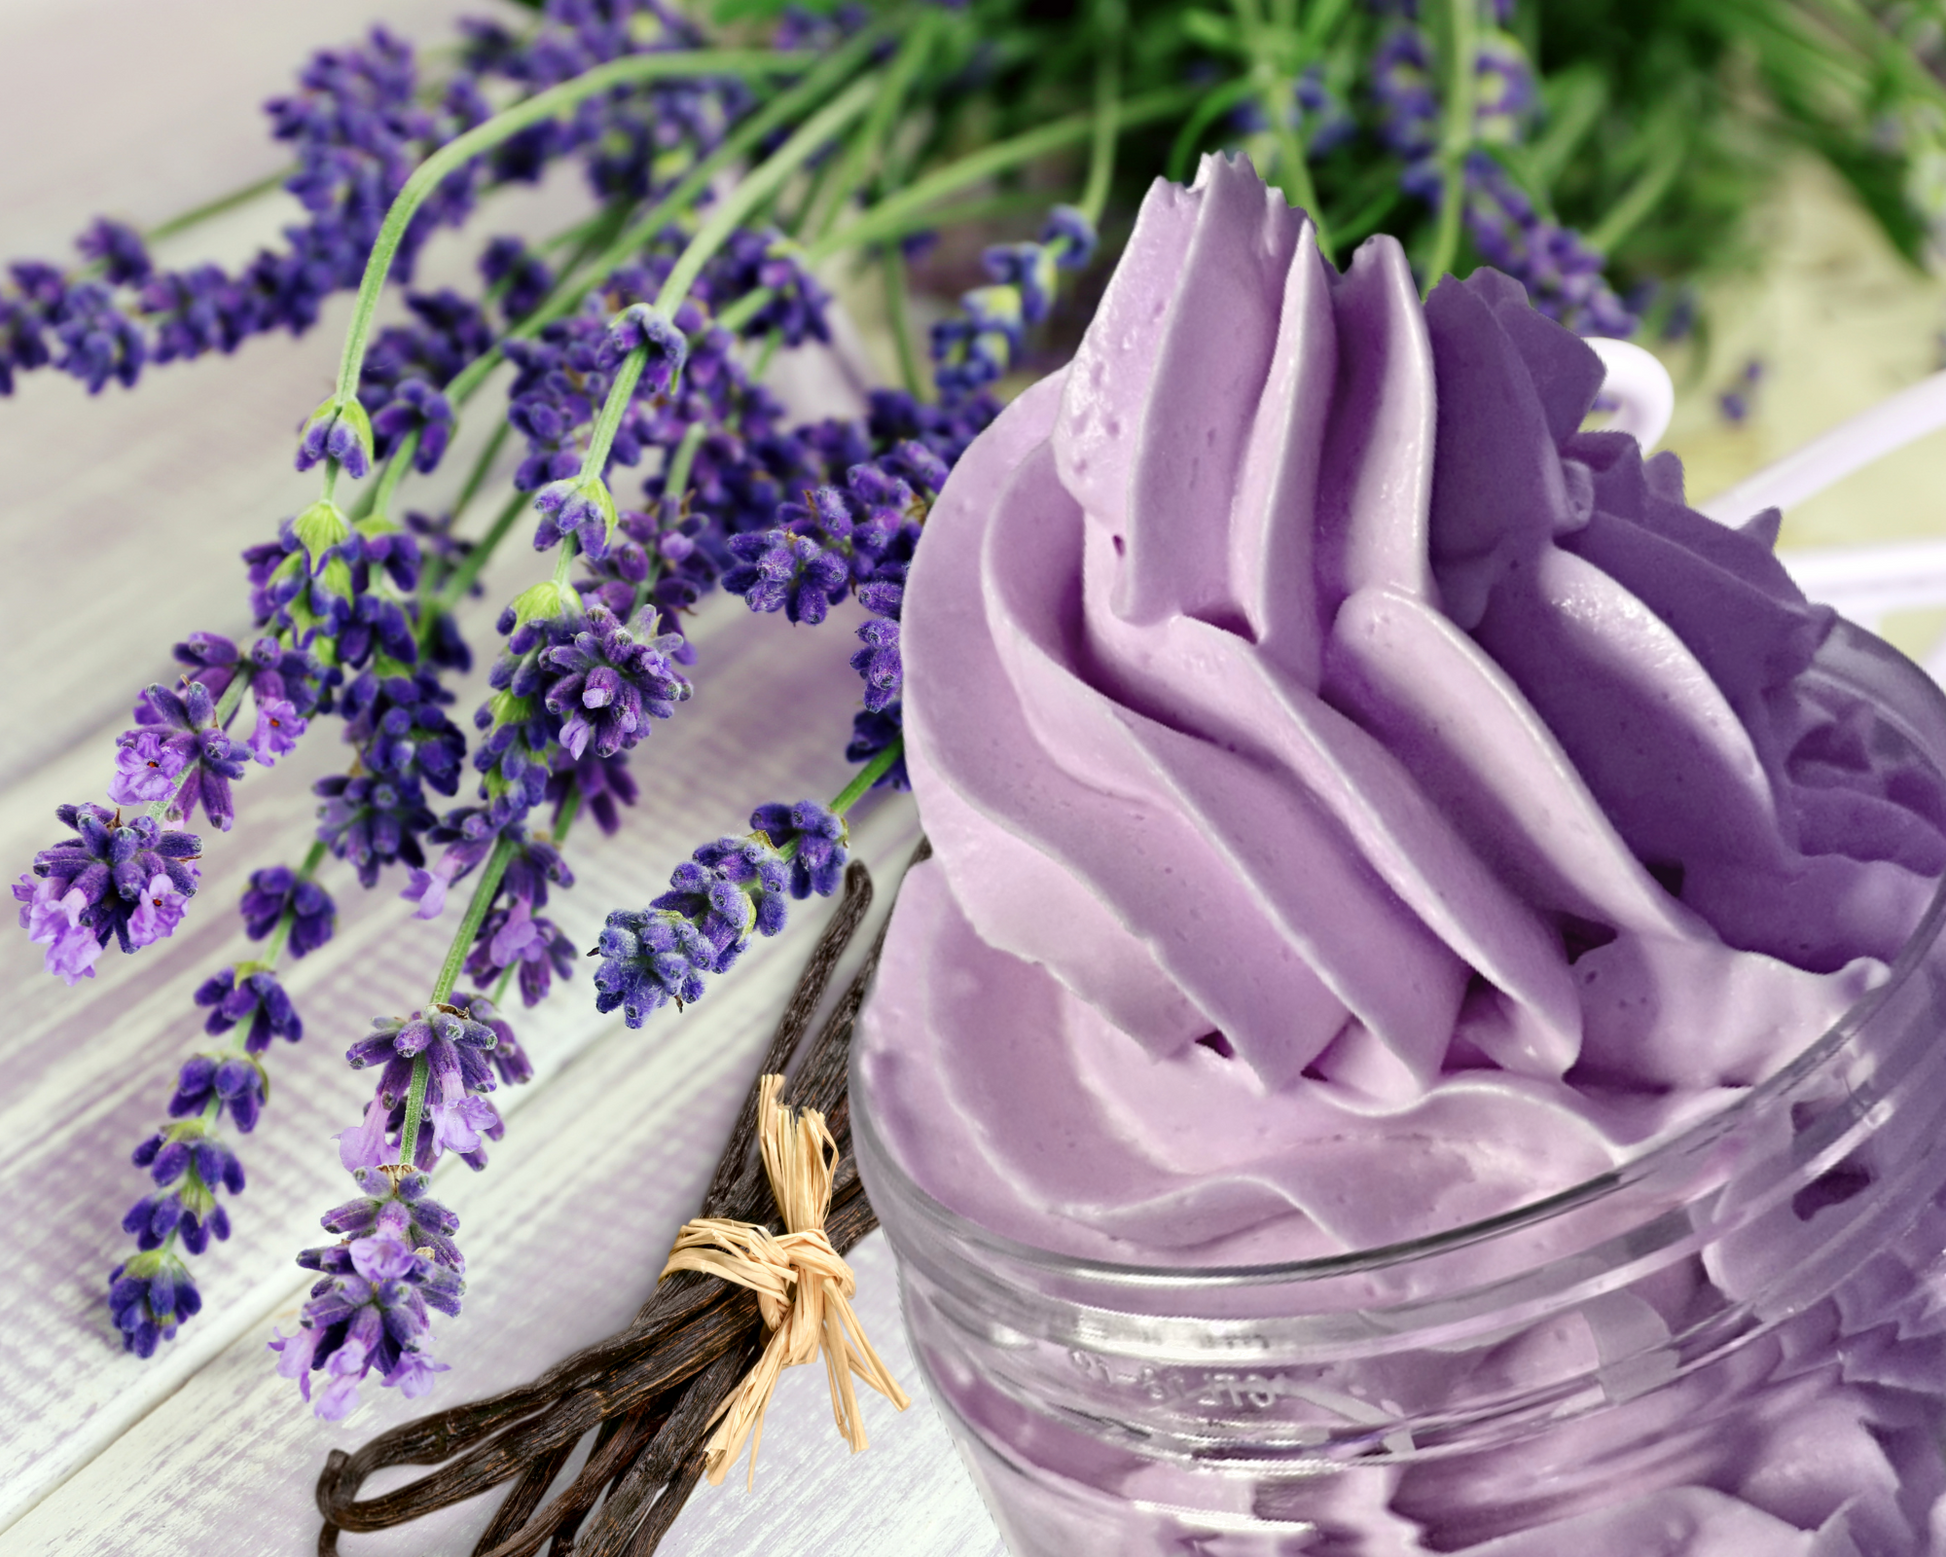 Lavender Vanilla Whipped Body Butter/Personal Care/DumaMbilibodybutter –  Duma Mbili LLC